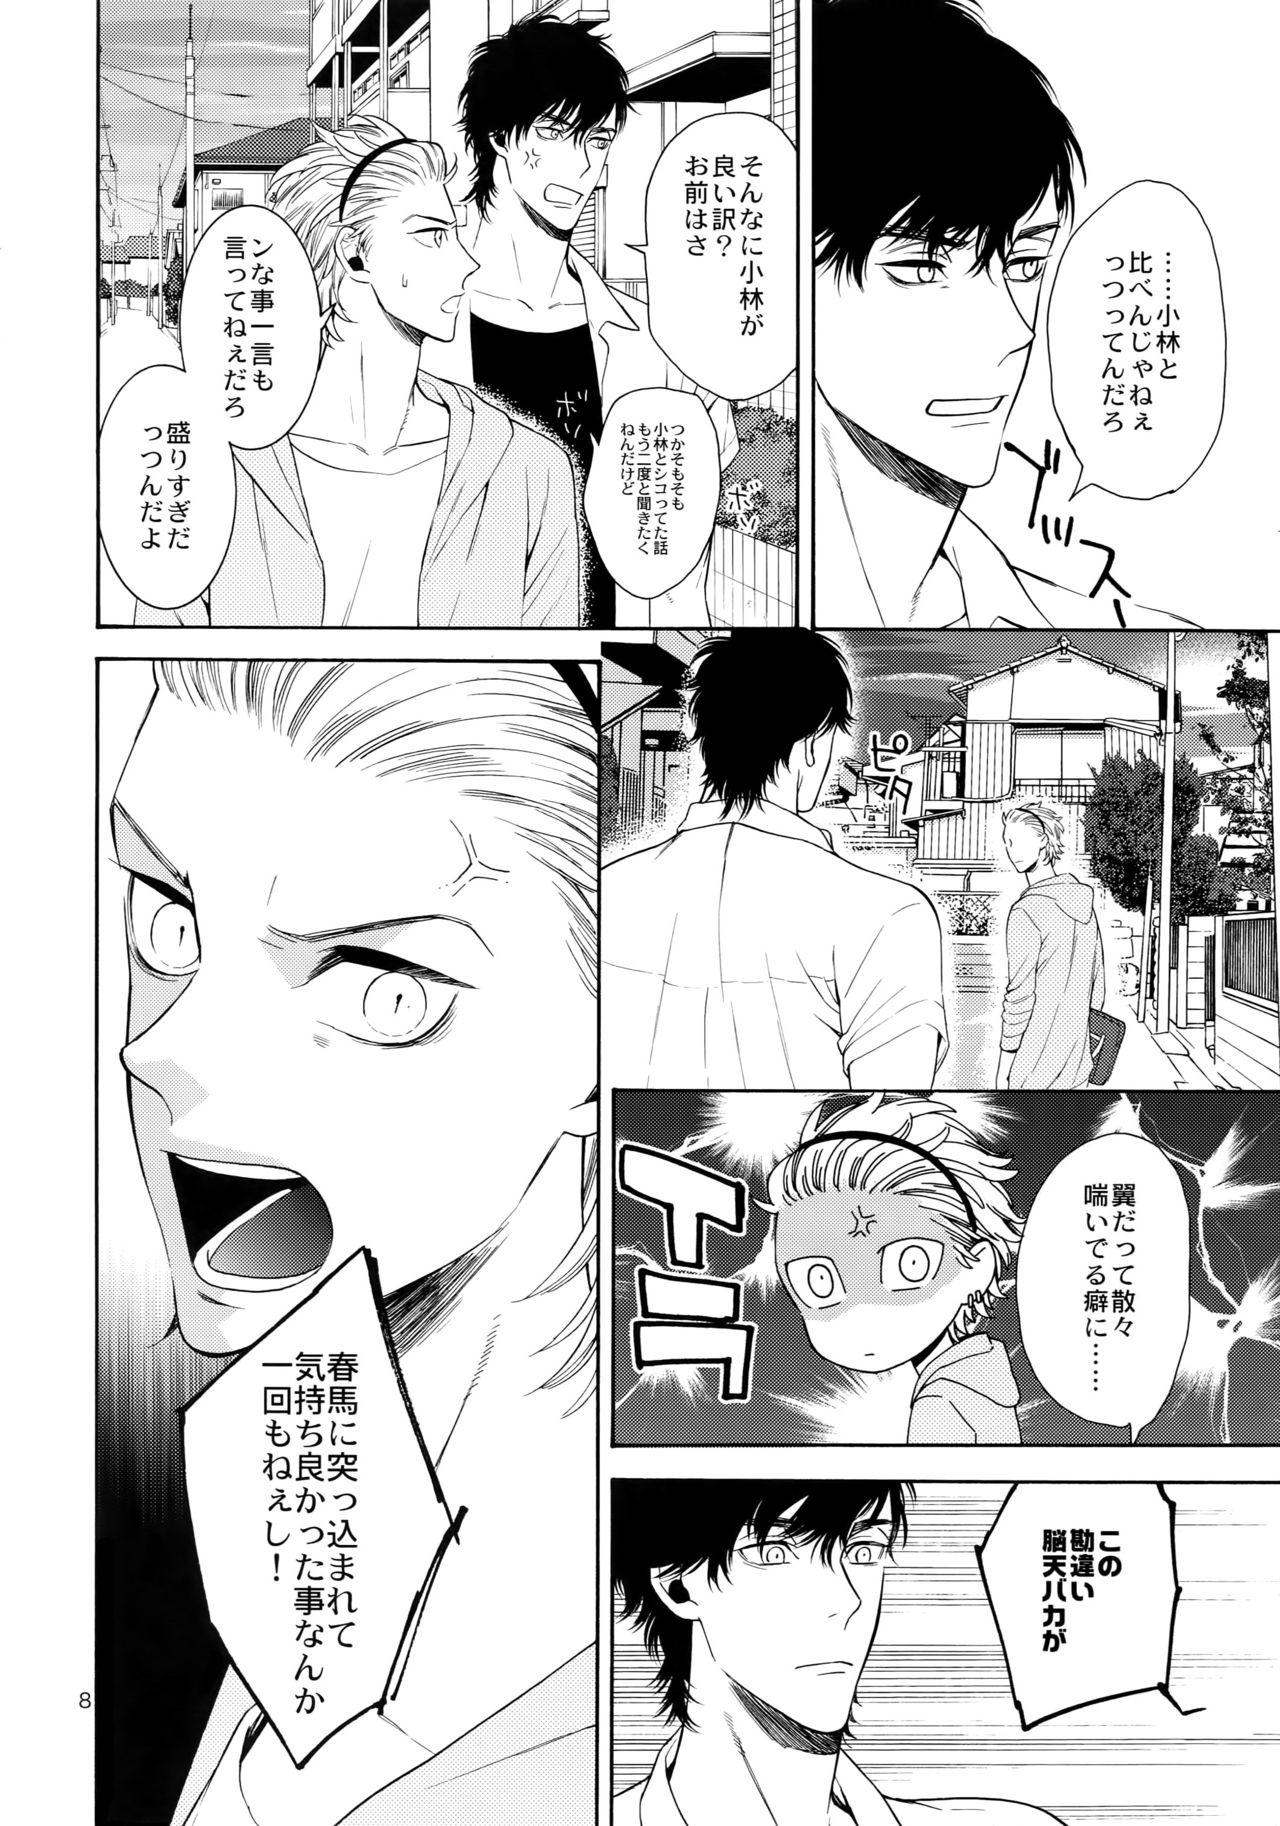 Famosa Uruwashi no Vinca Major Koborebanashi Dyke - Page 7